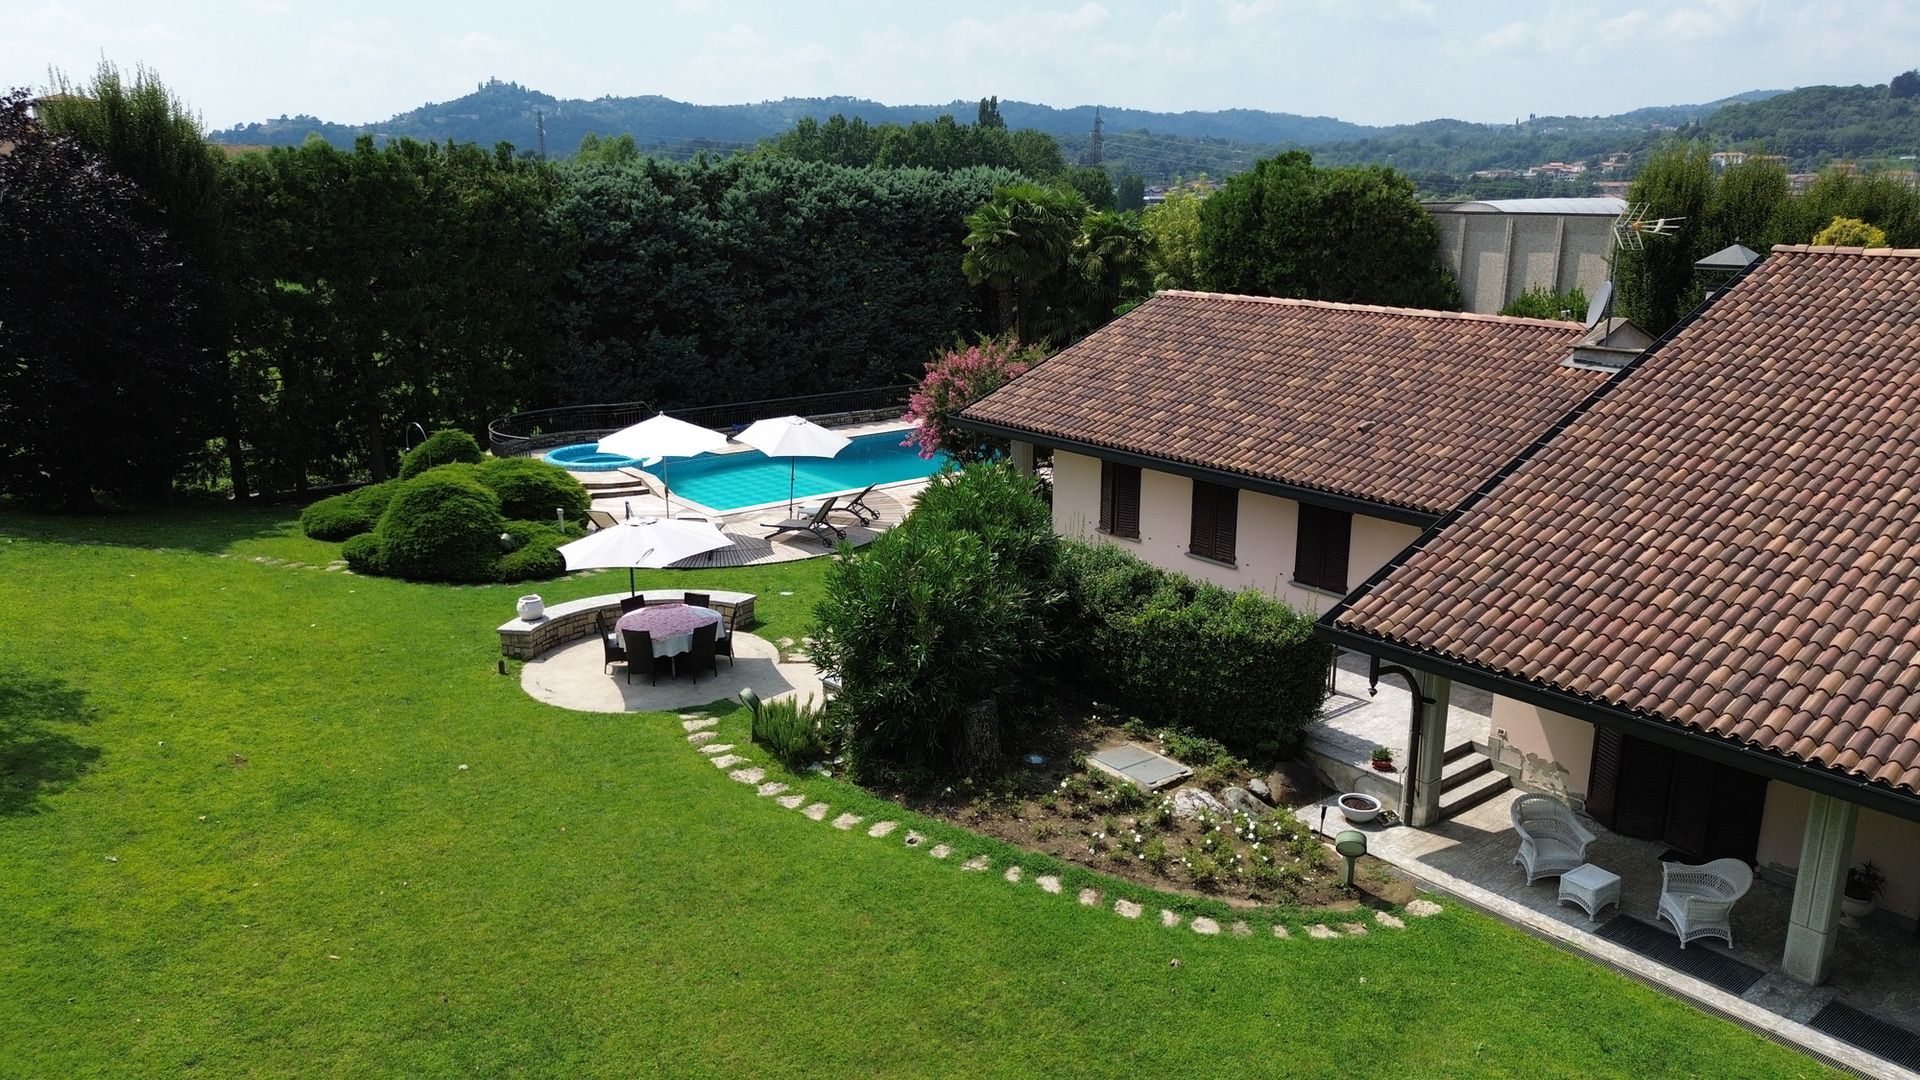 For sale villa in city Calco Lombardia